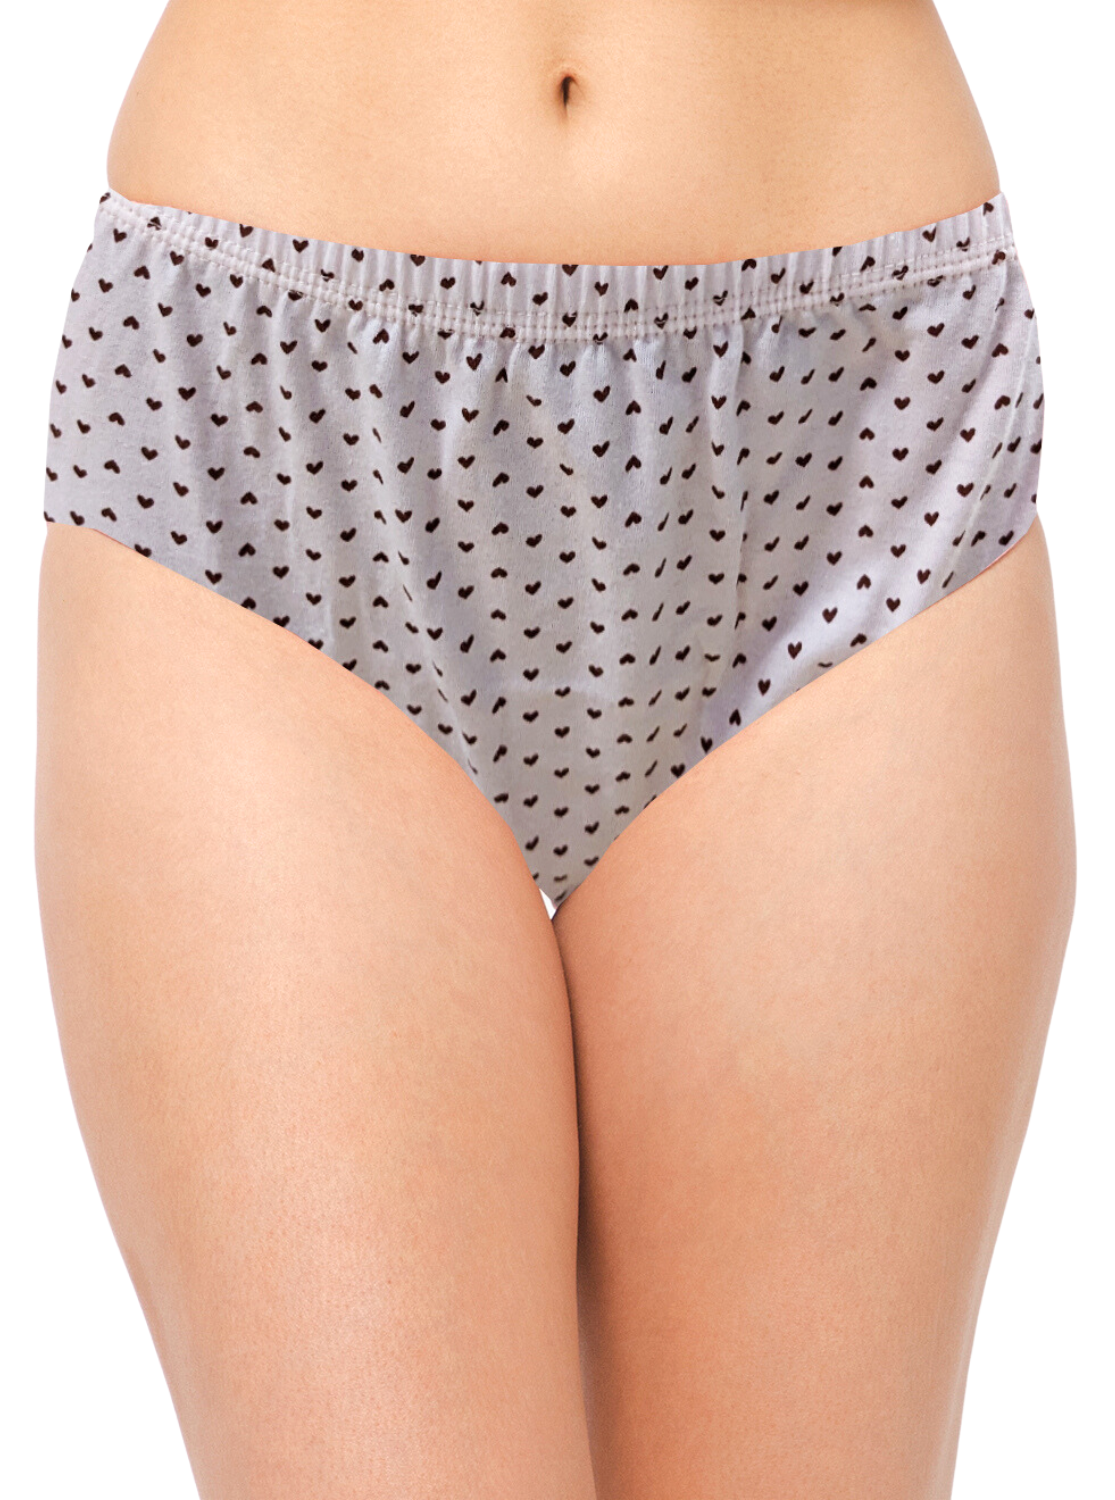 AUSM Premium Cotton Printed Panties | Superior Quality | Flexible Elastic Fit | Pack of 3